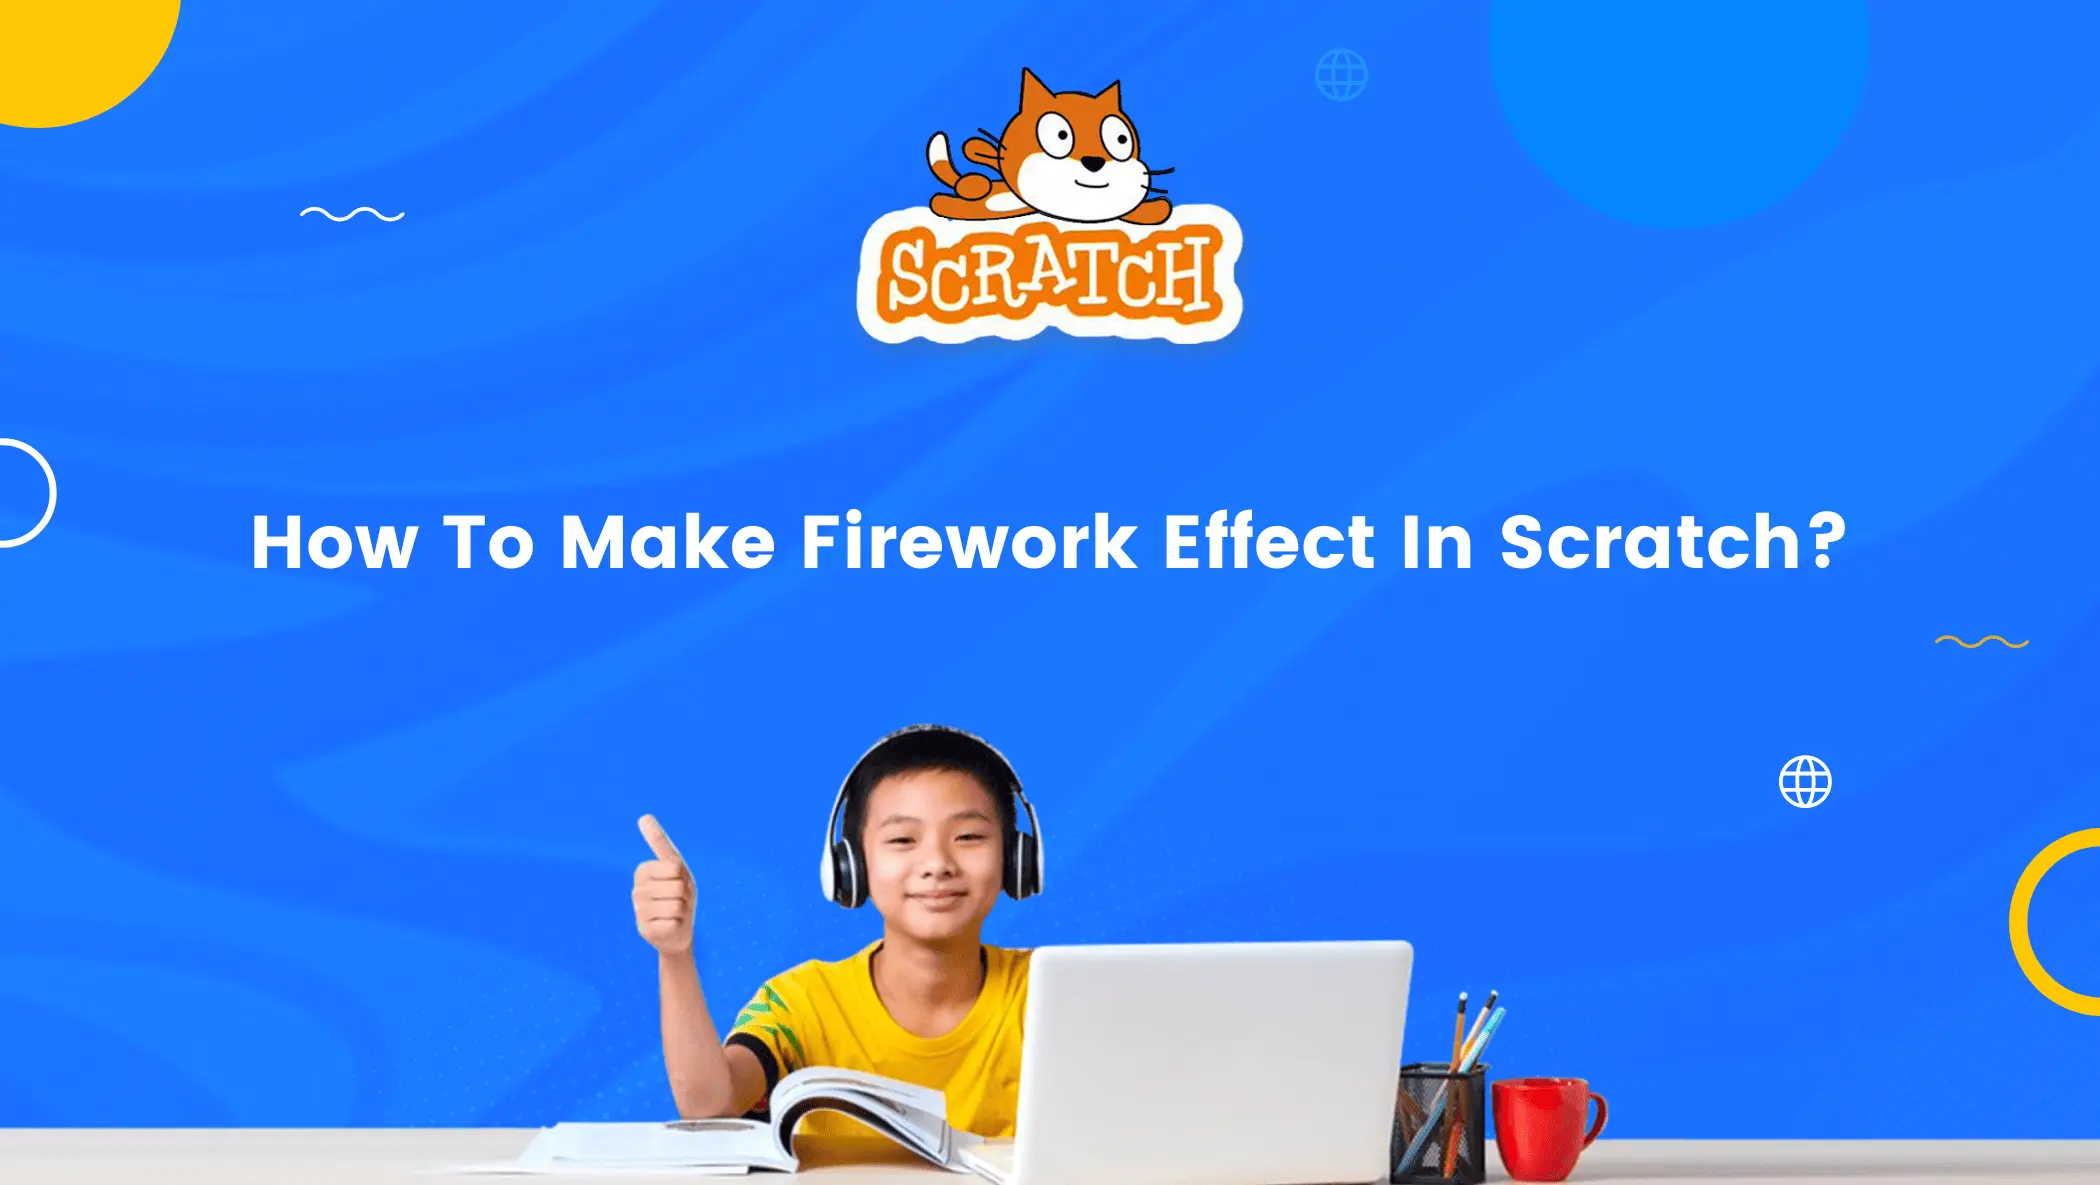 Firework-Effect-In-Scratch